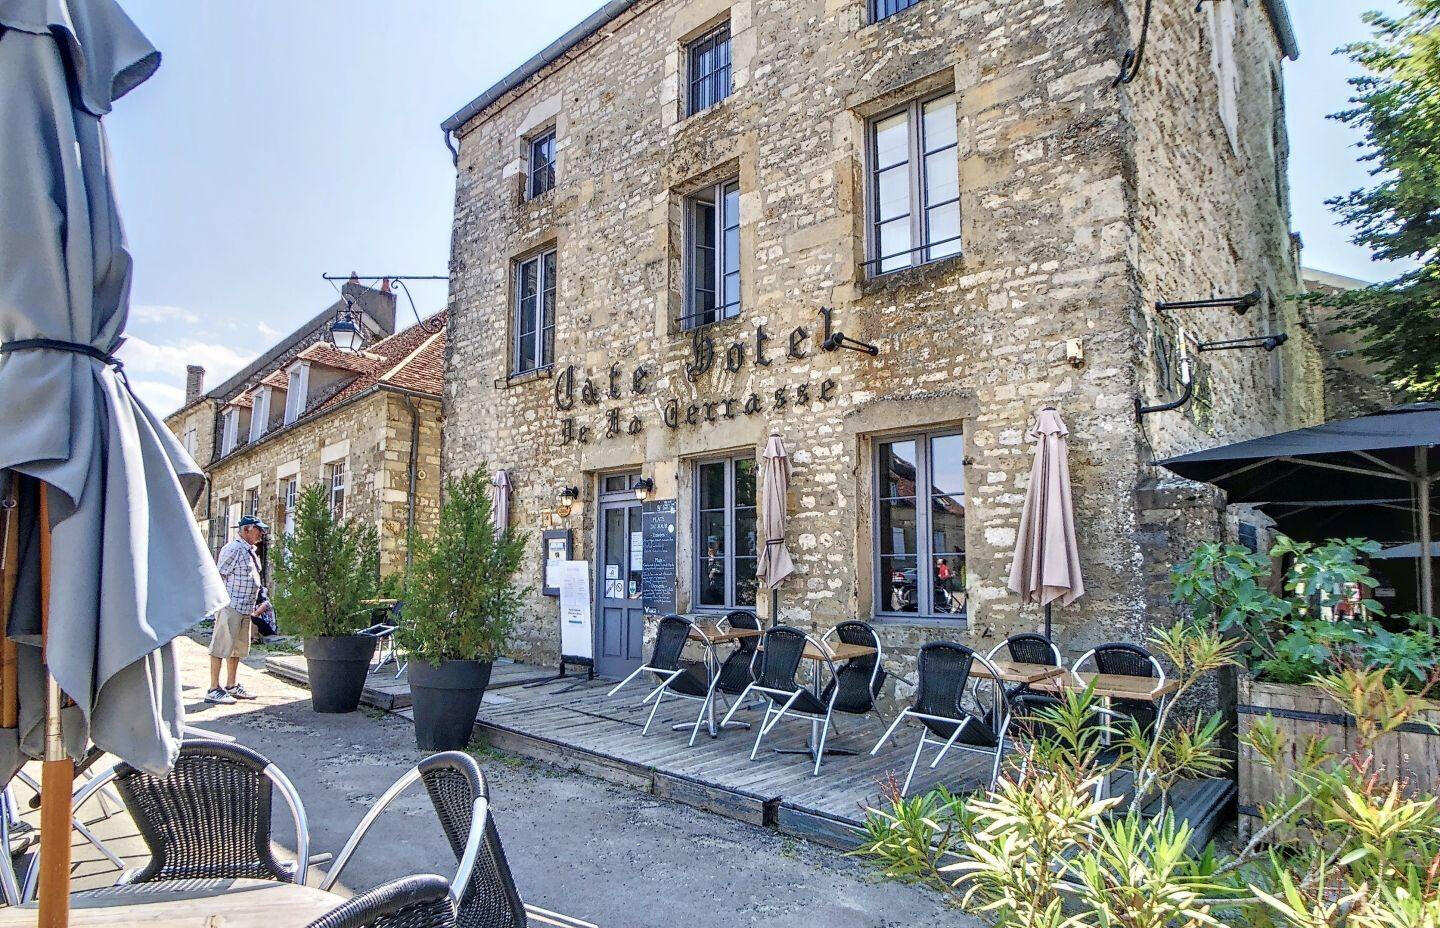 Vente hôtel-restaurant proche basilique à Vezelay